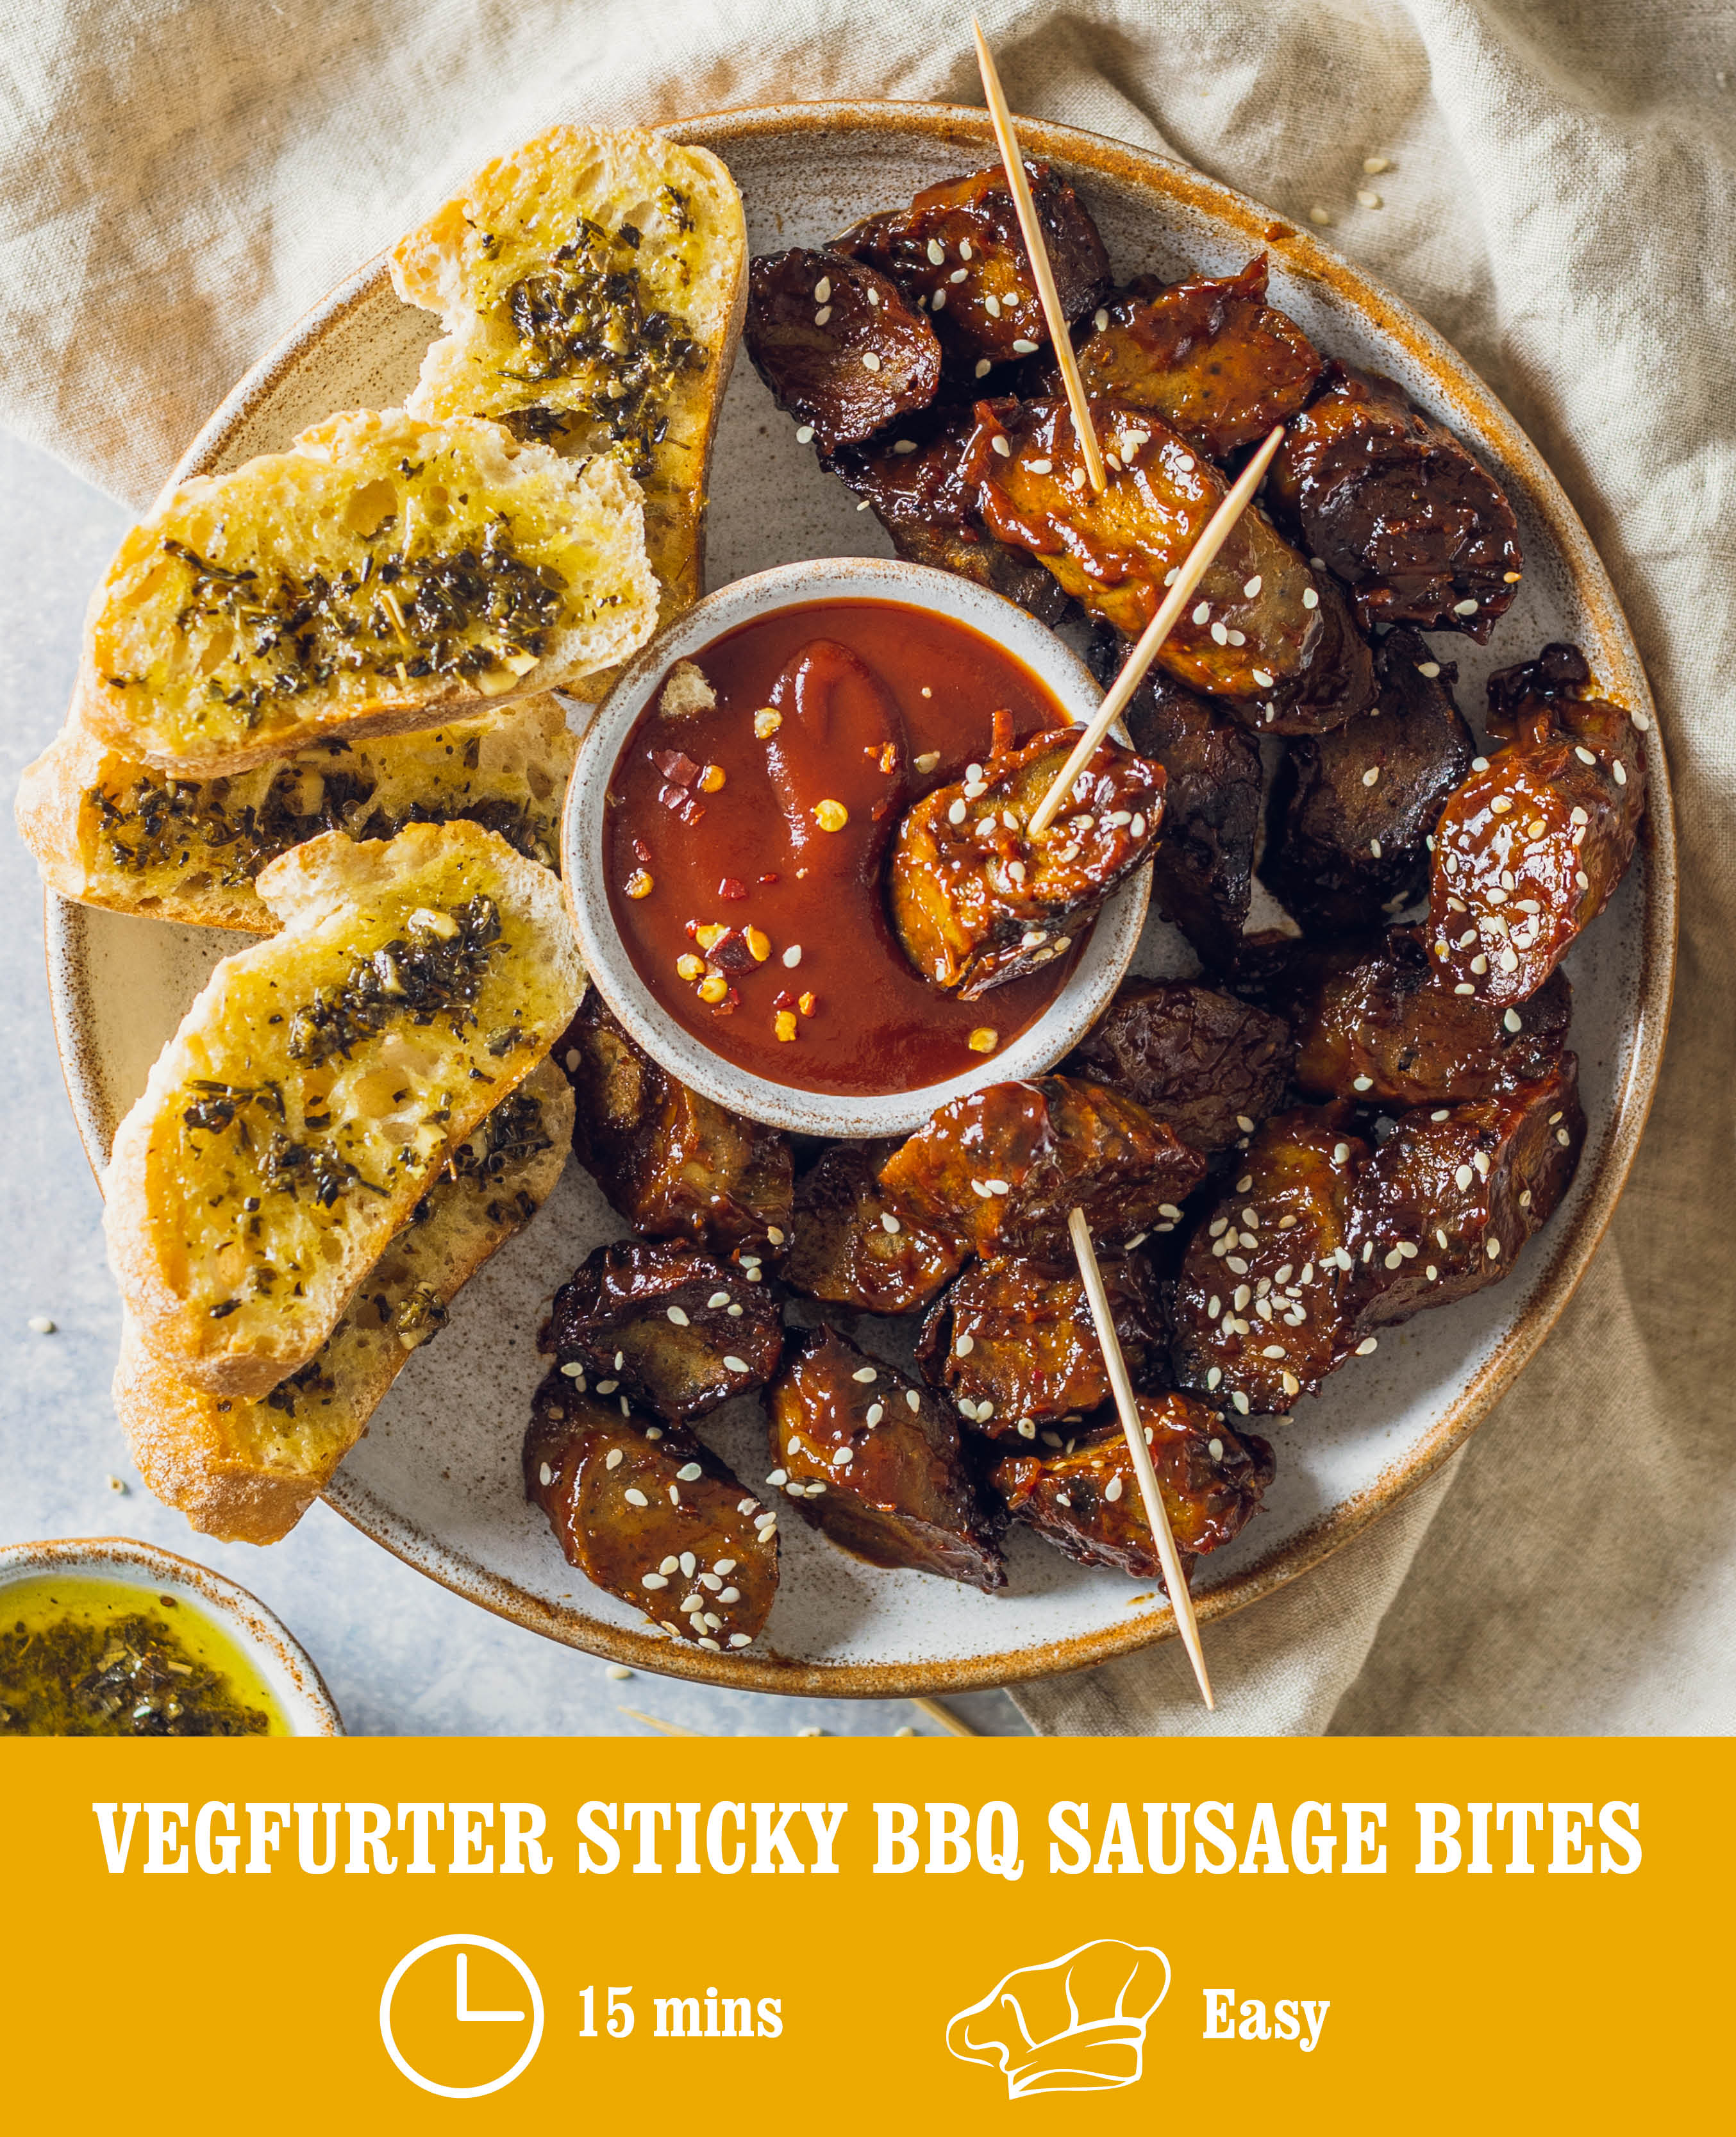 Vegfurter sticky bbq sausage bites